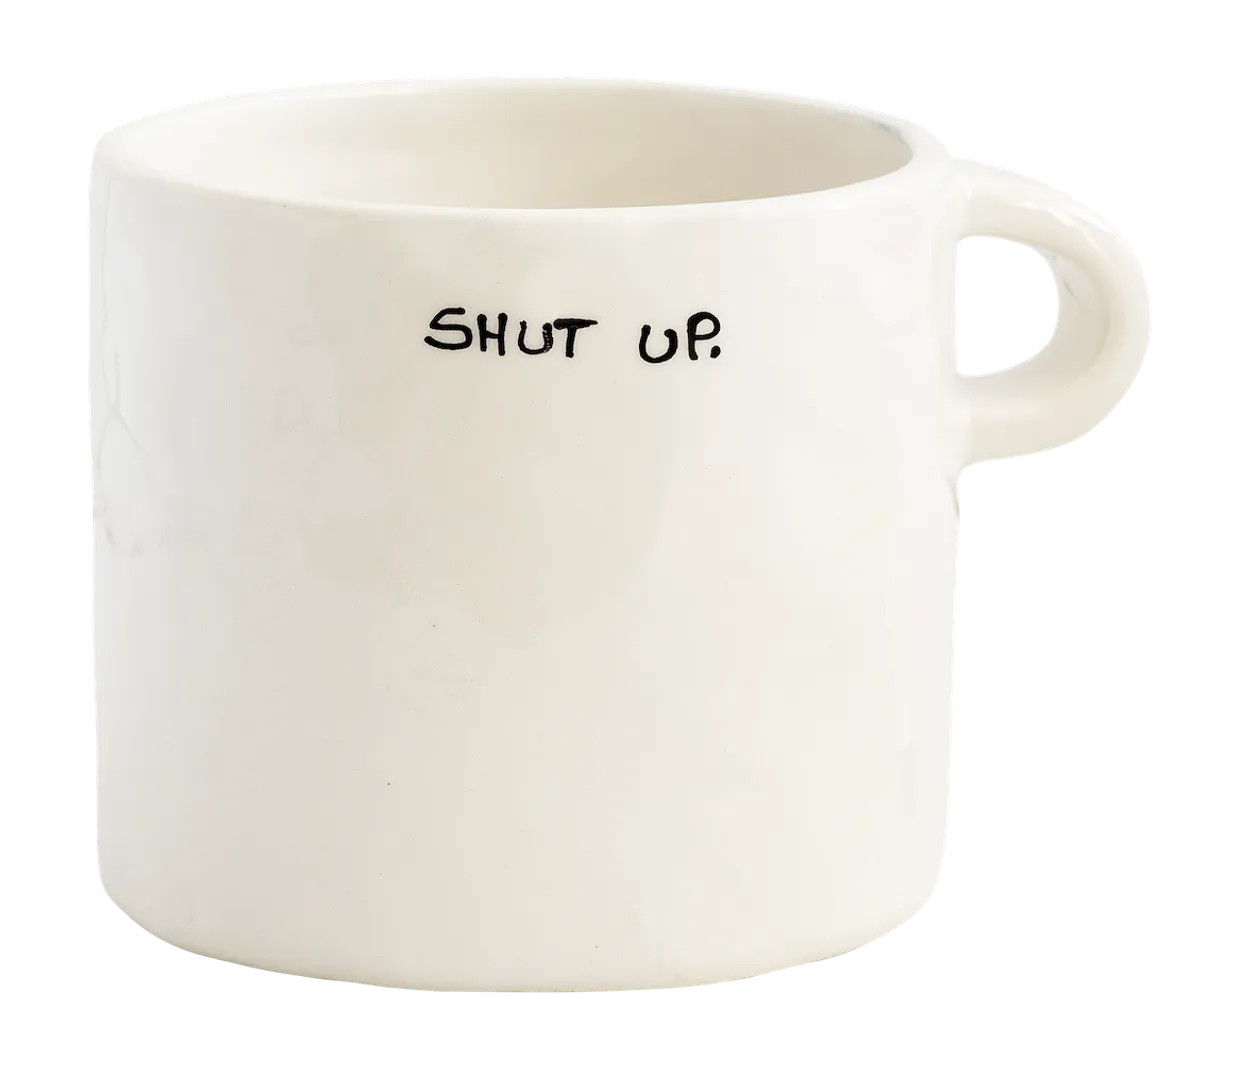 Mug Shut Up